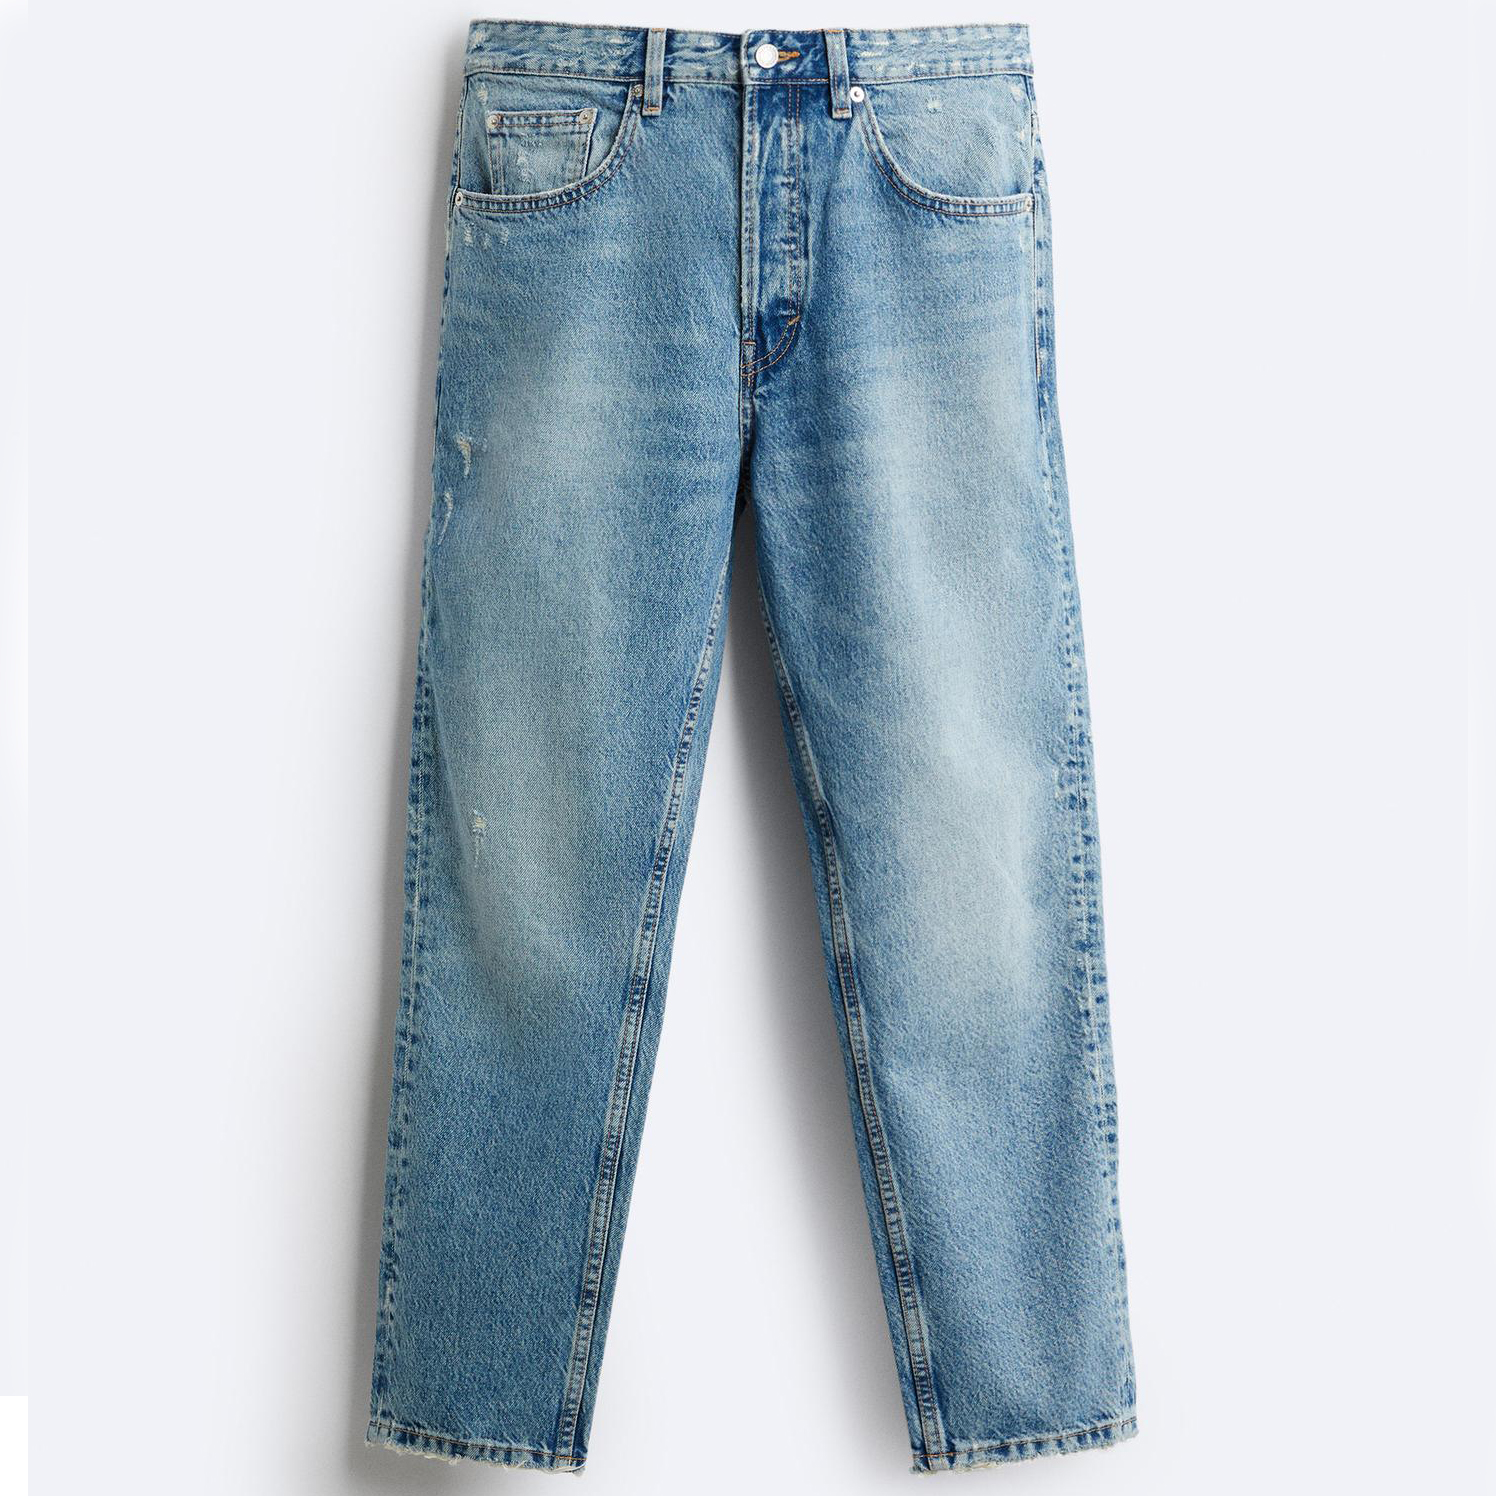 Джинсы Zara Slim Cropped-fit, голубой джинсы узкие 78 застежка на молнию на щиколотке 38 fr 44 rus розовый